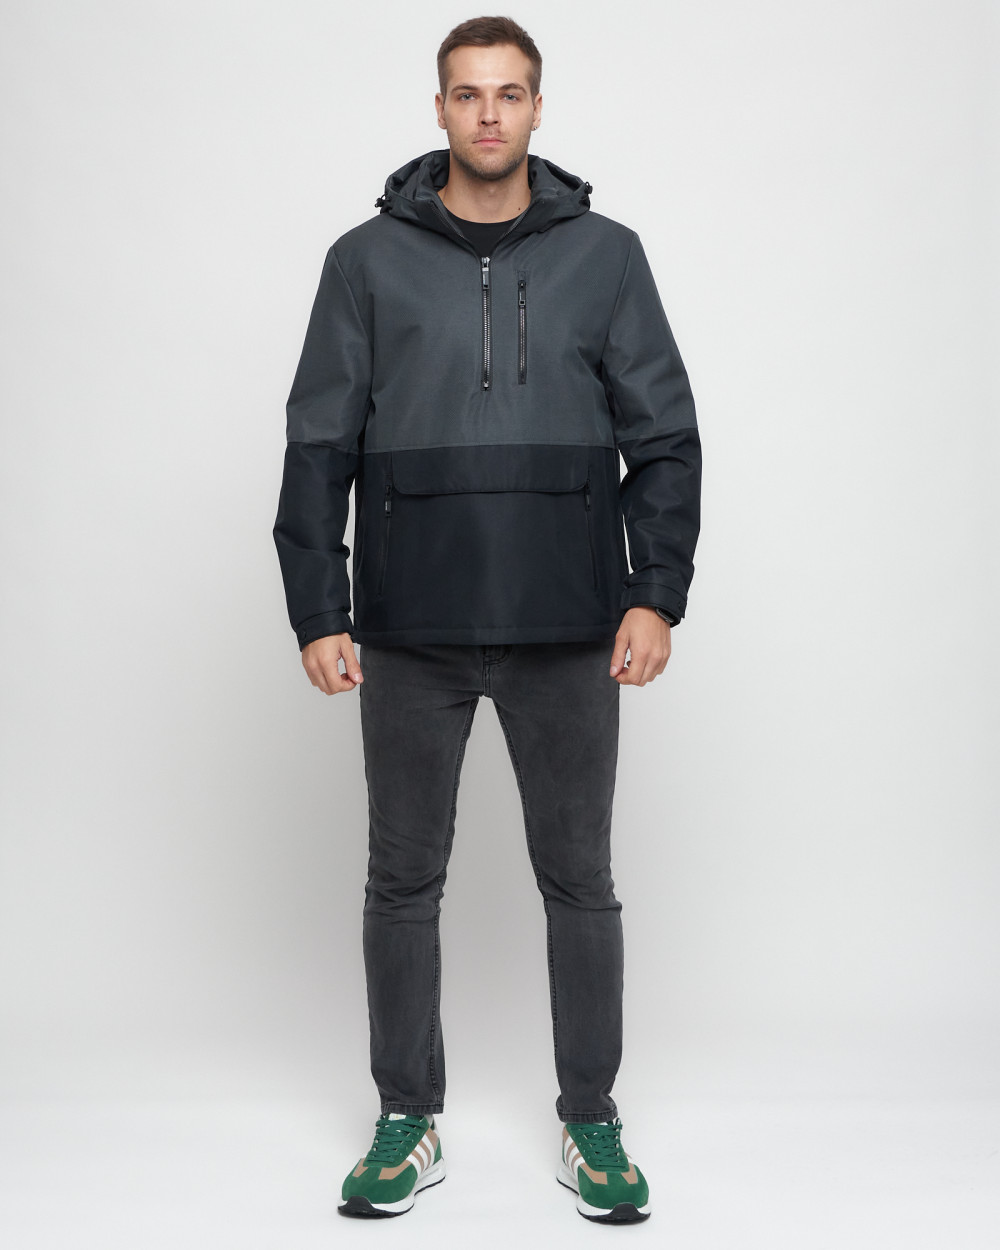 Купить Куртка-анорак спортивная мужская темно-серого цвета 3307TC